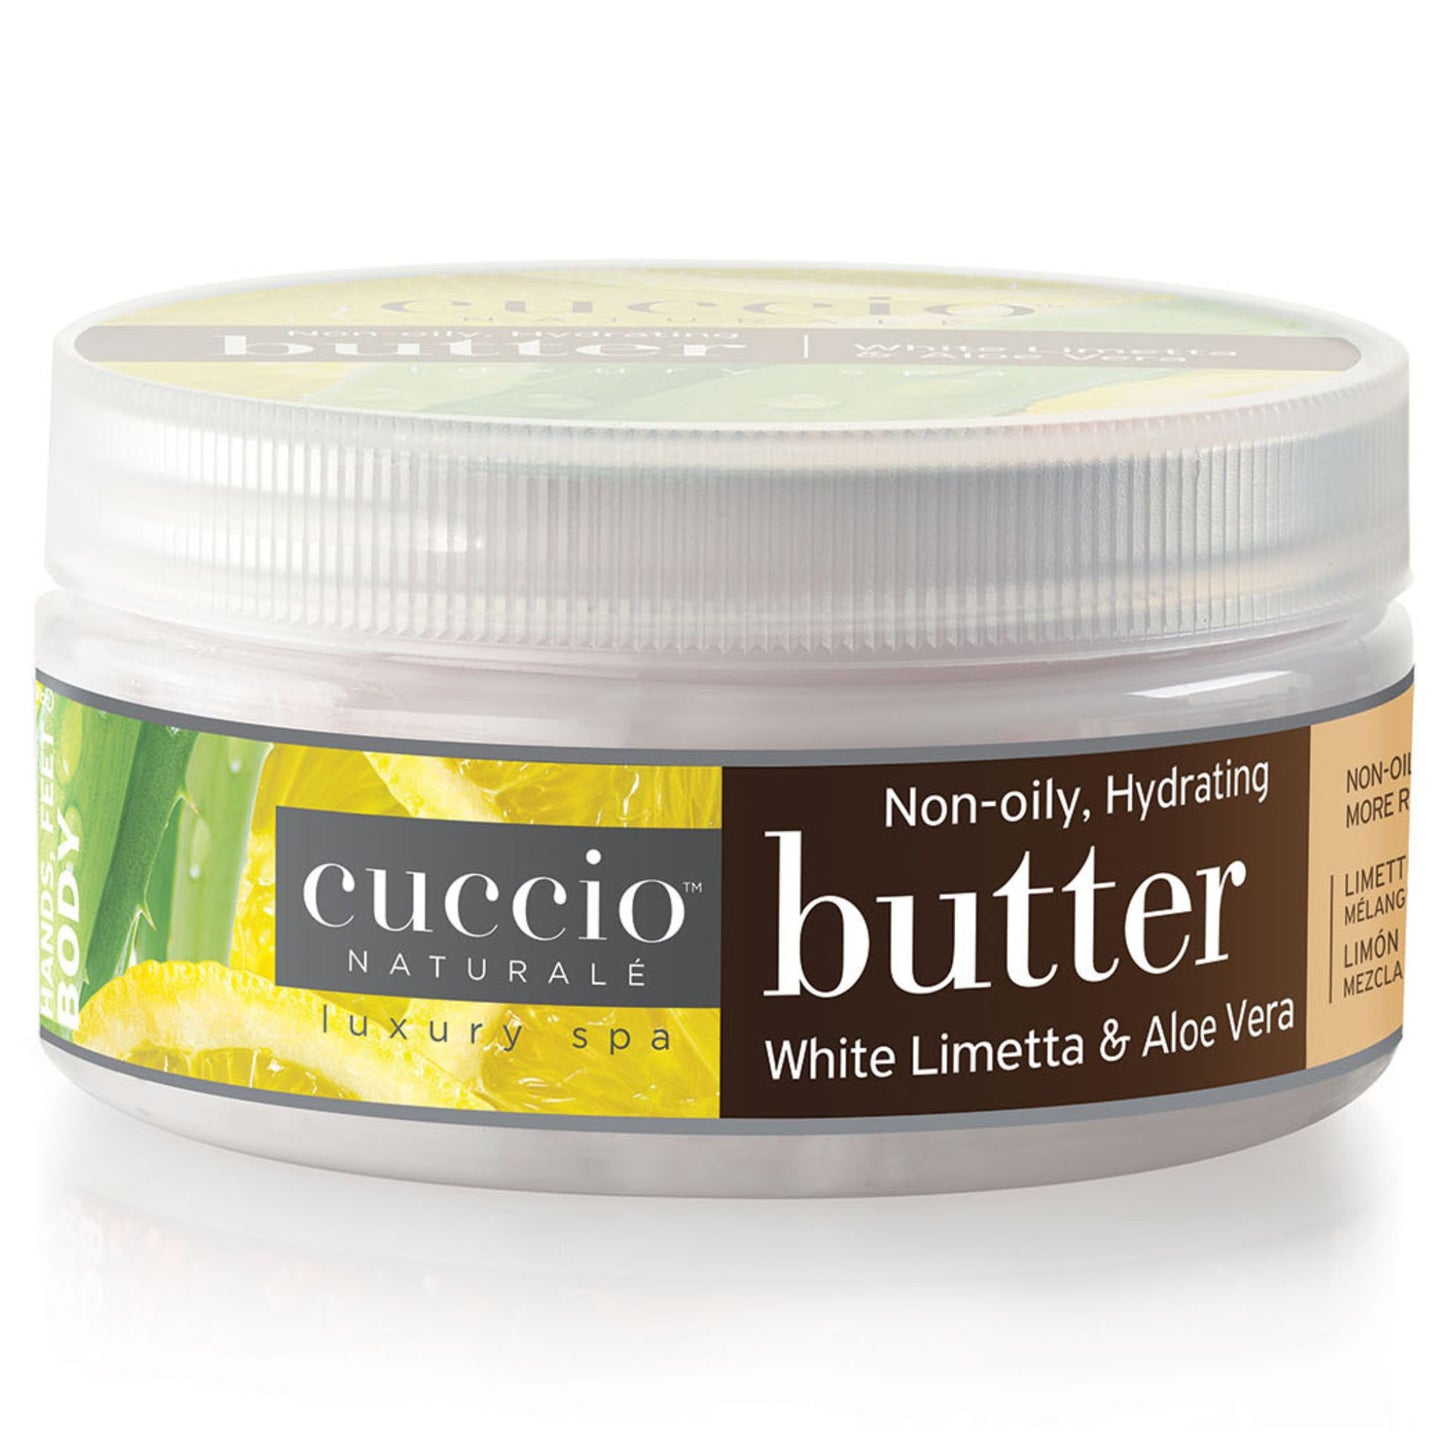 White Limetta & Aloe Vera Butter Blend 8oz